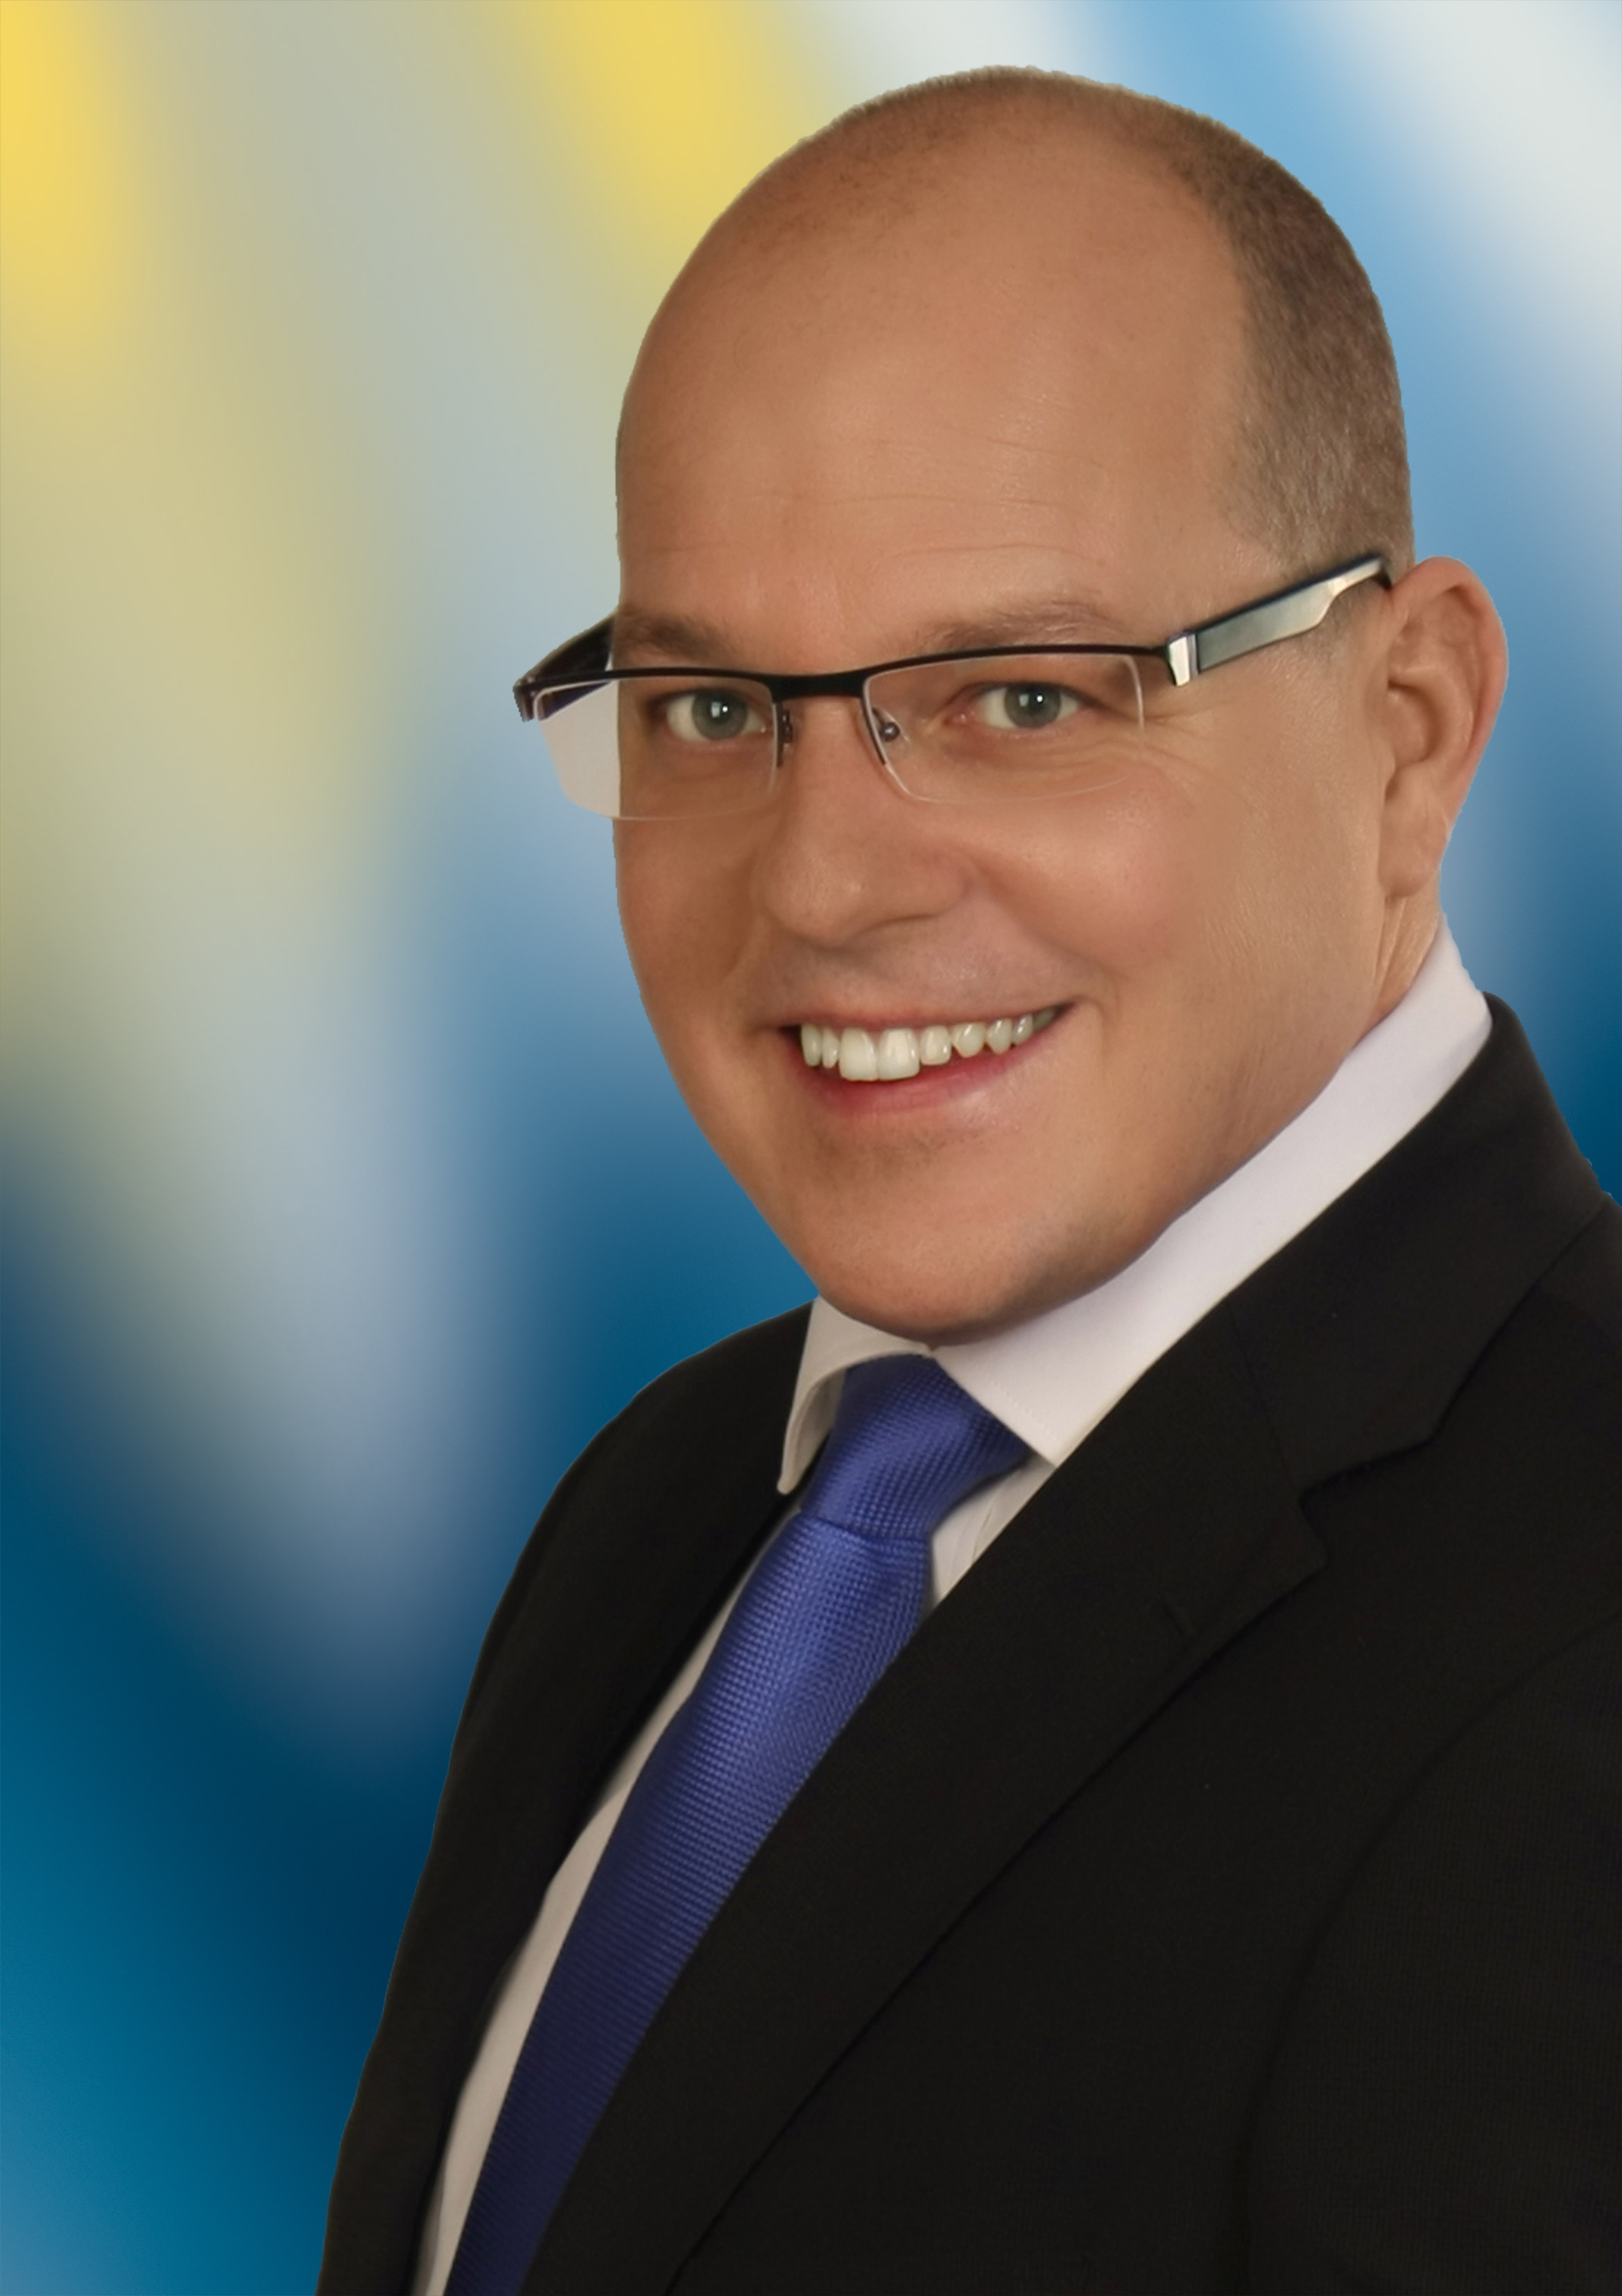 Danny Eichelbaum MdL - CDU Landratskandidat für die Wahl am 24.03.2013